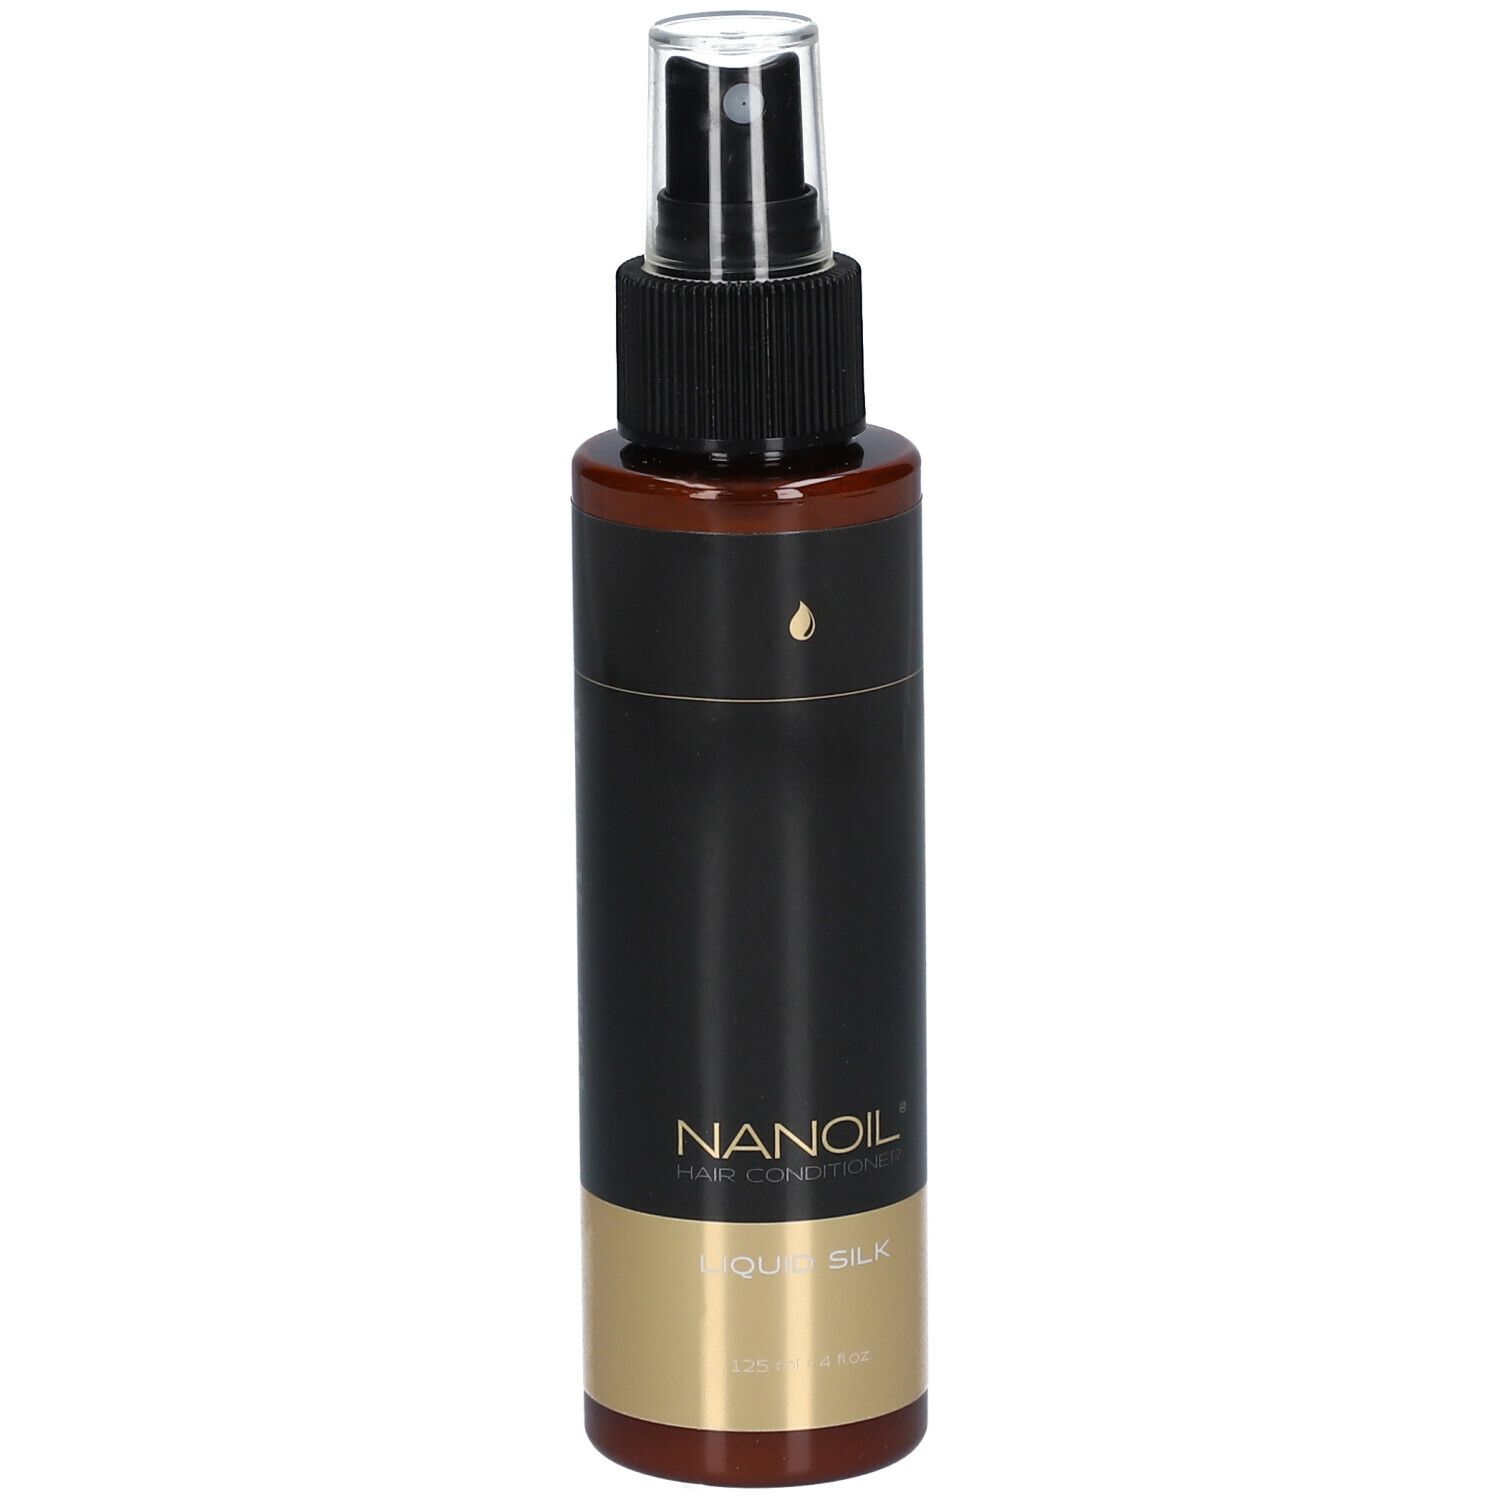 NANOIL® Liquid Silk Hair Conditioner